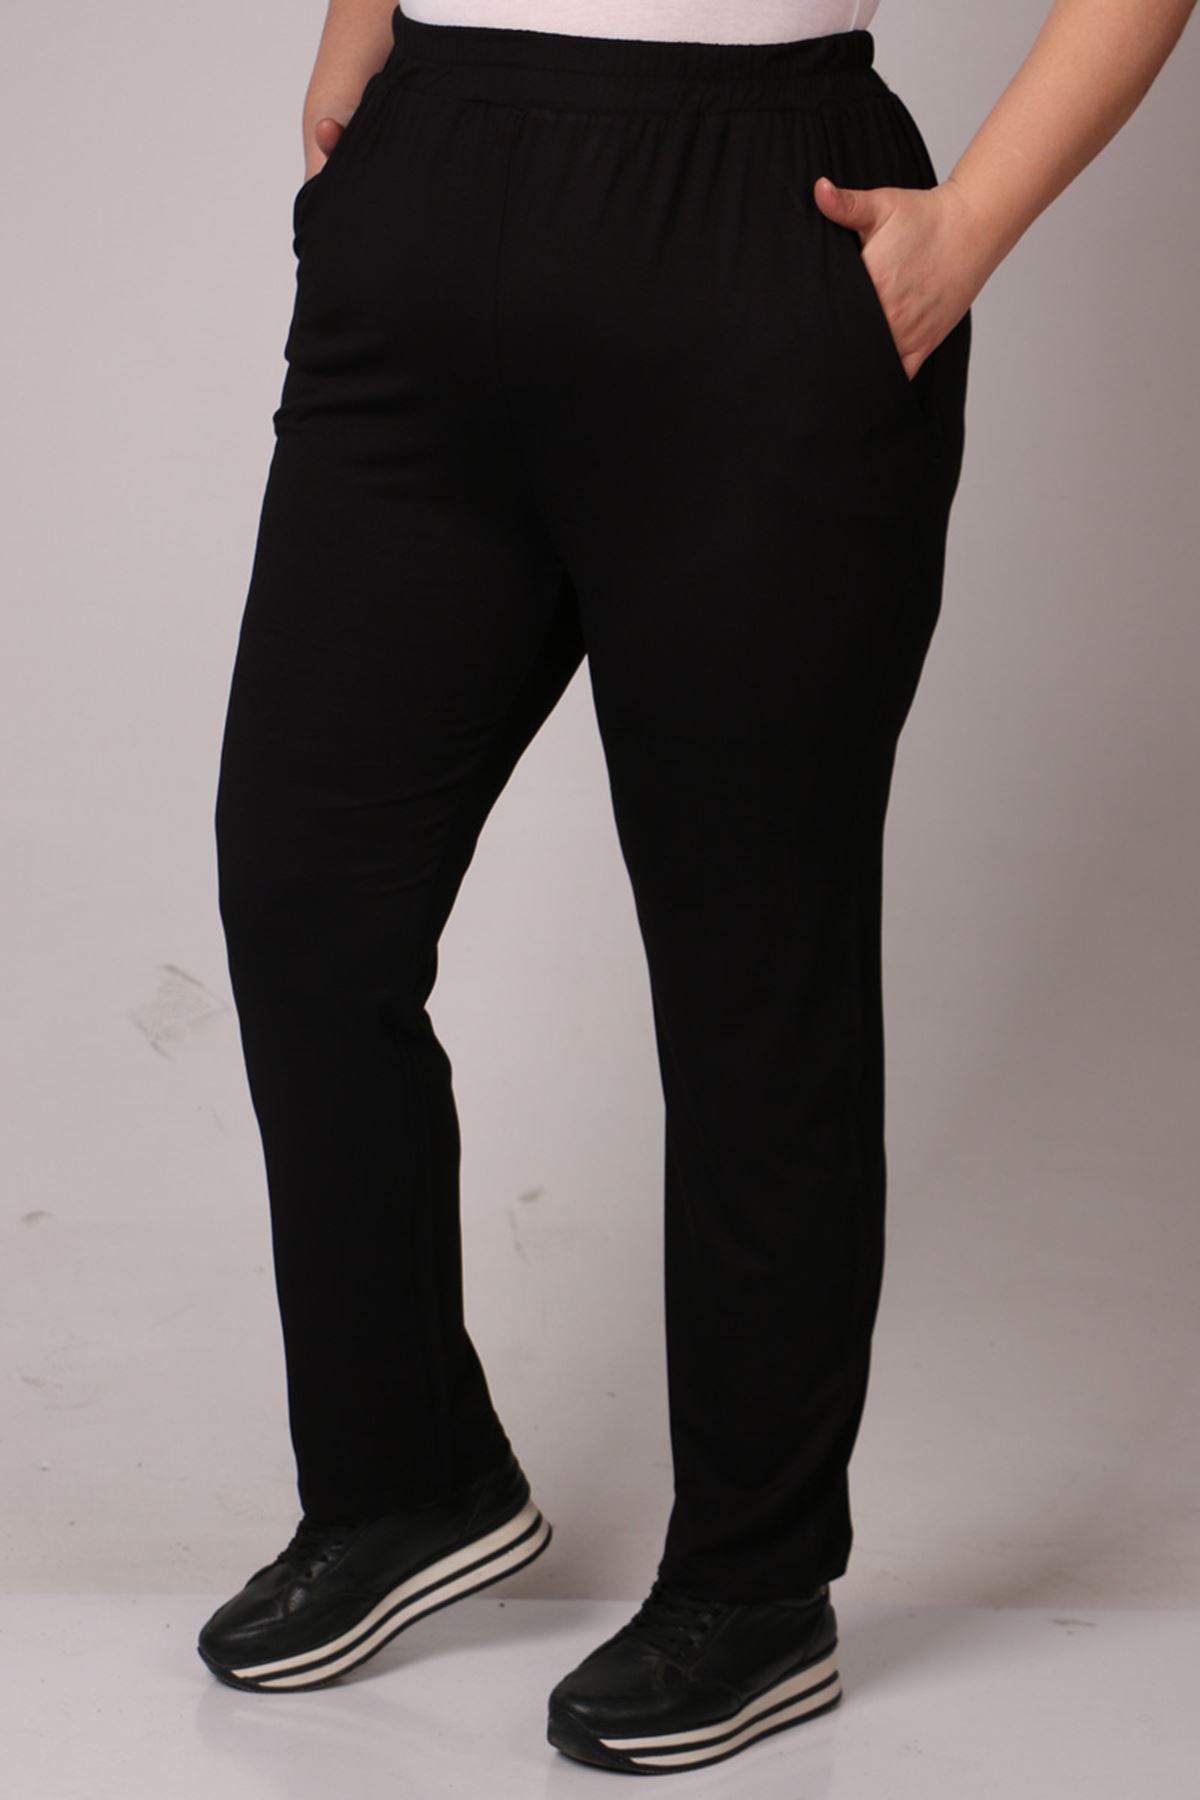 39001 Büyük Beden Yüksek Beli Lastikli Penye Pantolon - Siyah